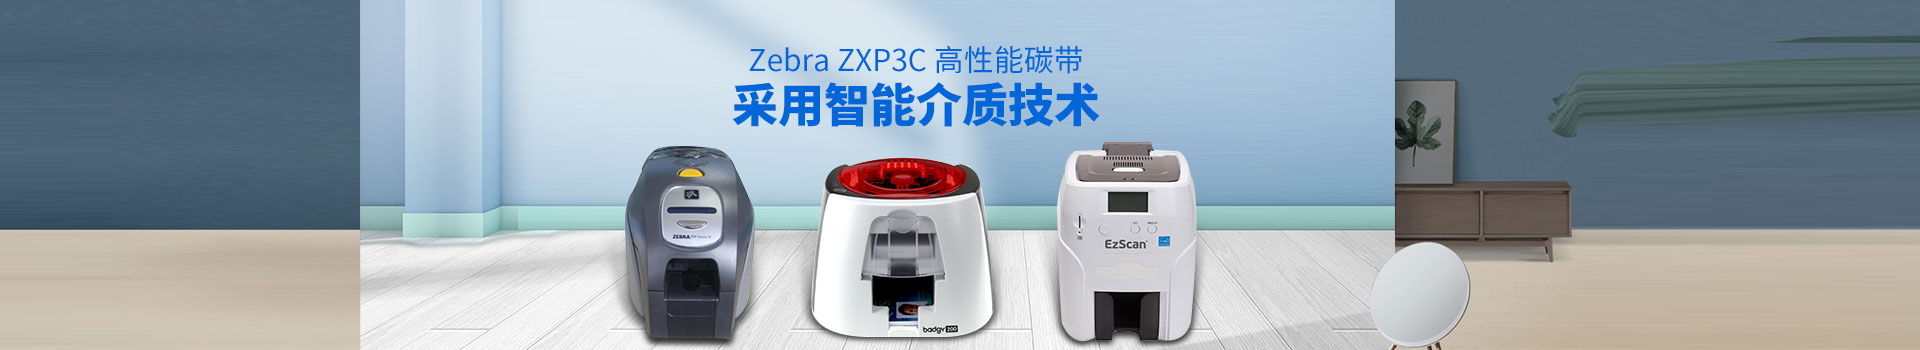 乐鱼官网-Zebra ZXP3C高性能碳帶,采用智能介質技術